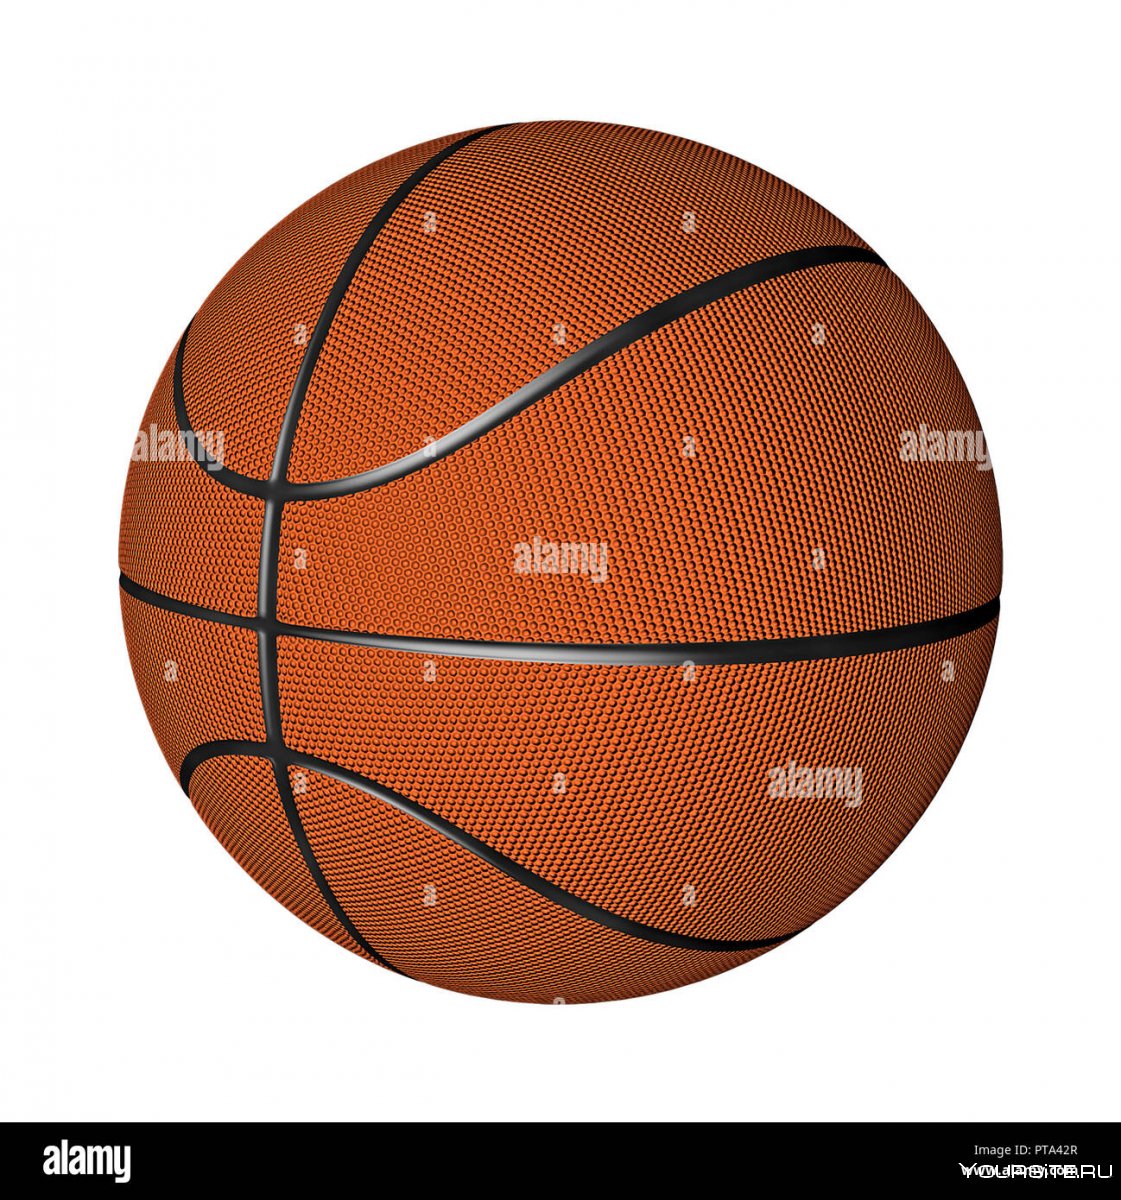 Баскетбольный мяч 3 размер в руках